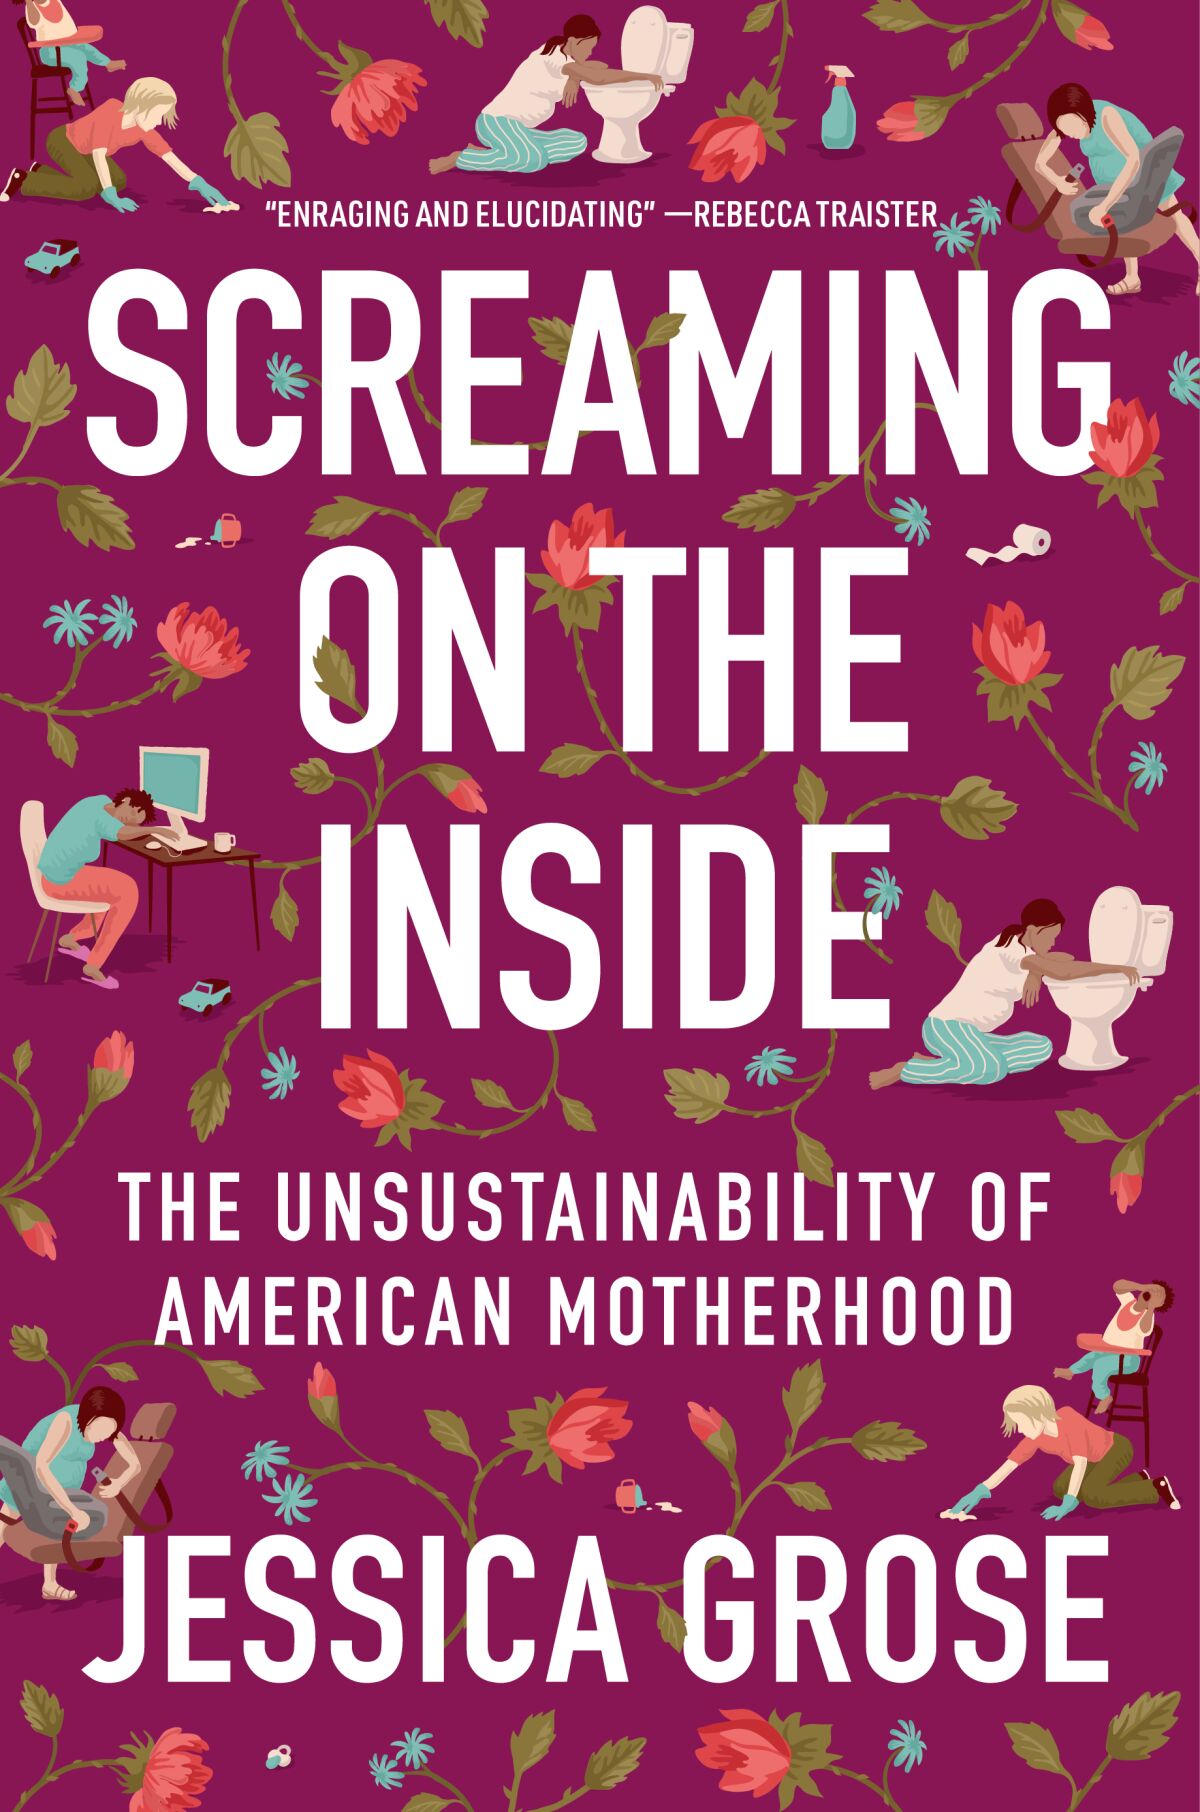 Jessica Grose talks ‘Screaming on the Inside,’ US motherhood